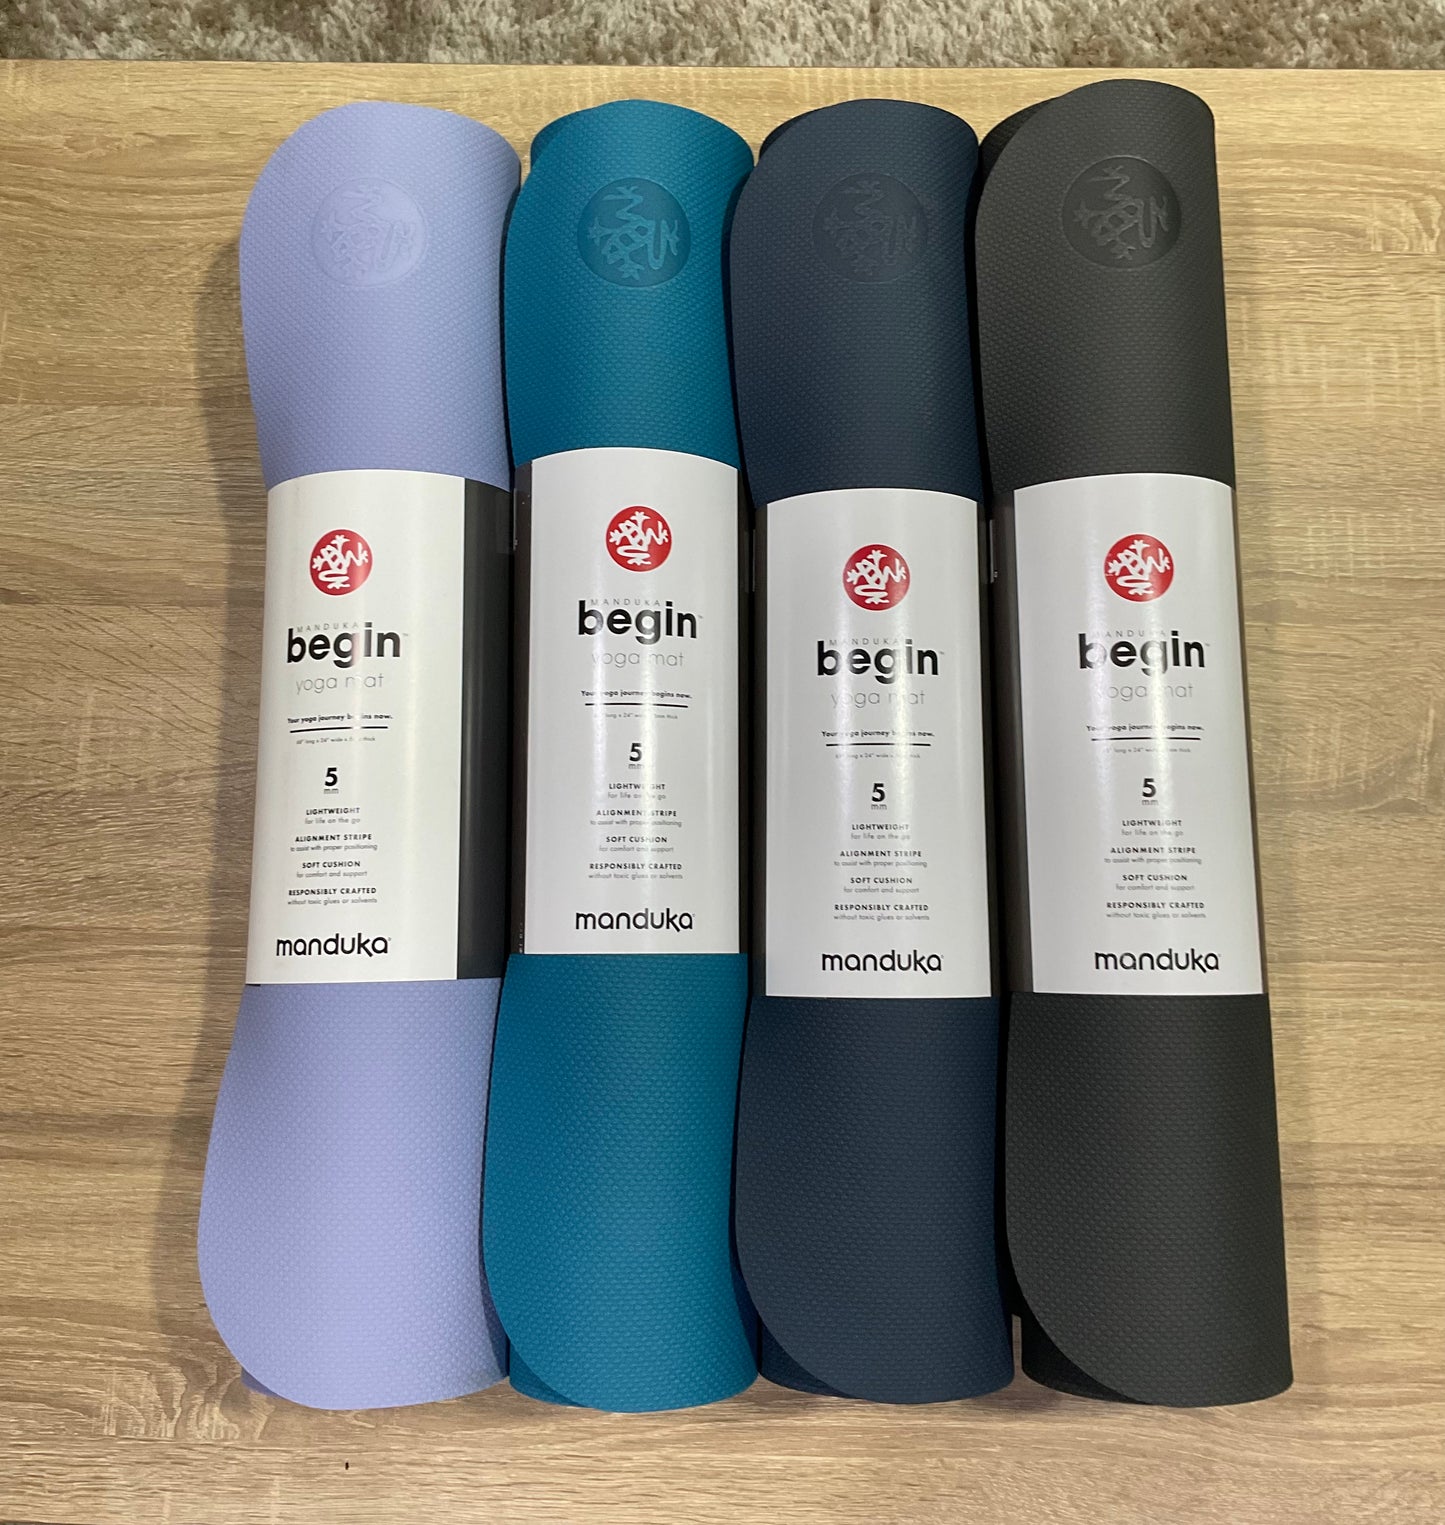 Manduka Begin® Yoga Mat 5mm - Baja Abu-abu